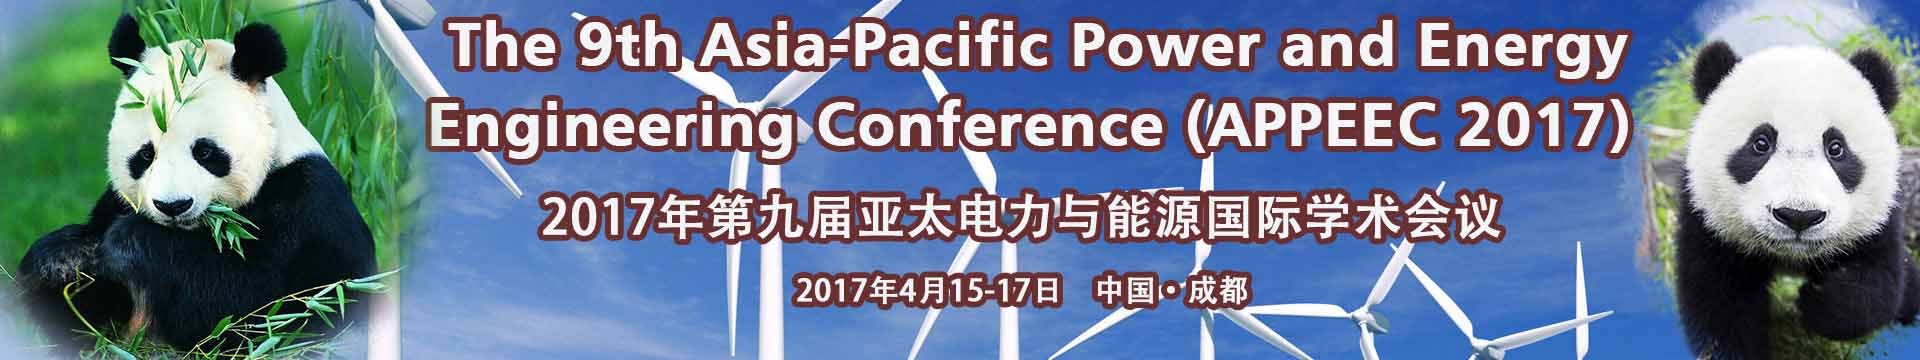 第九届亚太电力与能源国际学术会议(APPEEC 2017)